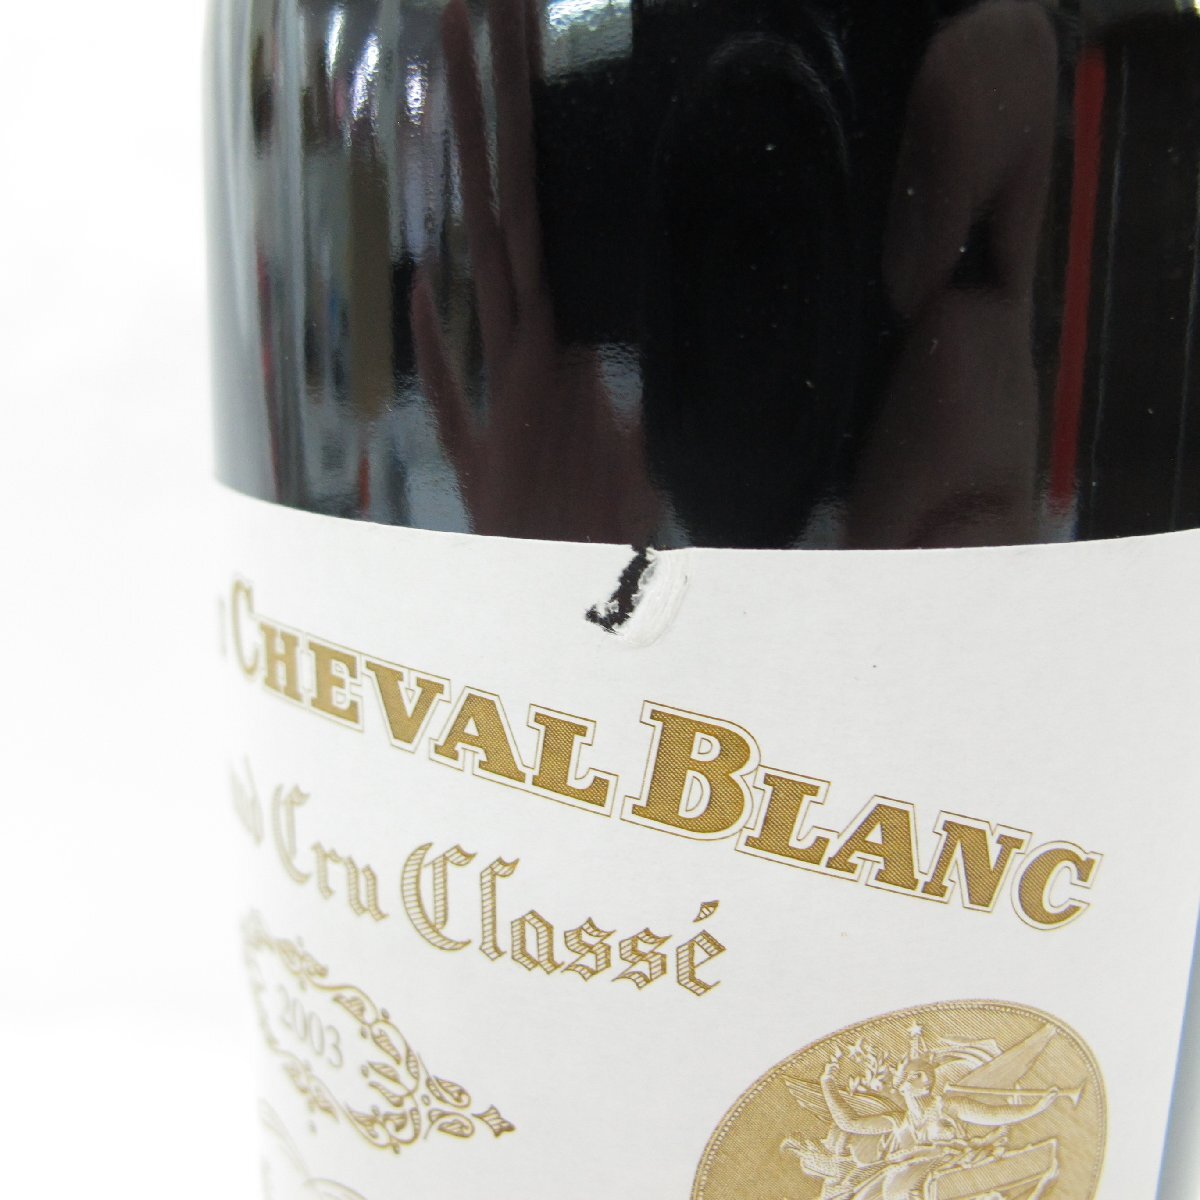 【未開栓】CHATEAU CHEVAL BLANC シャトー・シュヴァル・ブラン 2003 赤 ワイン 750ml 13.5% 11574609 0516_画像6